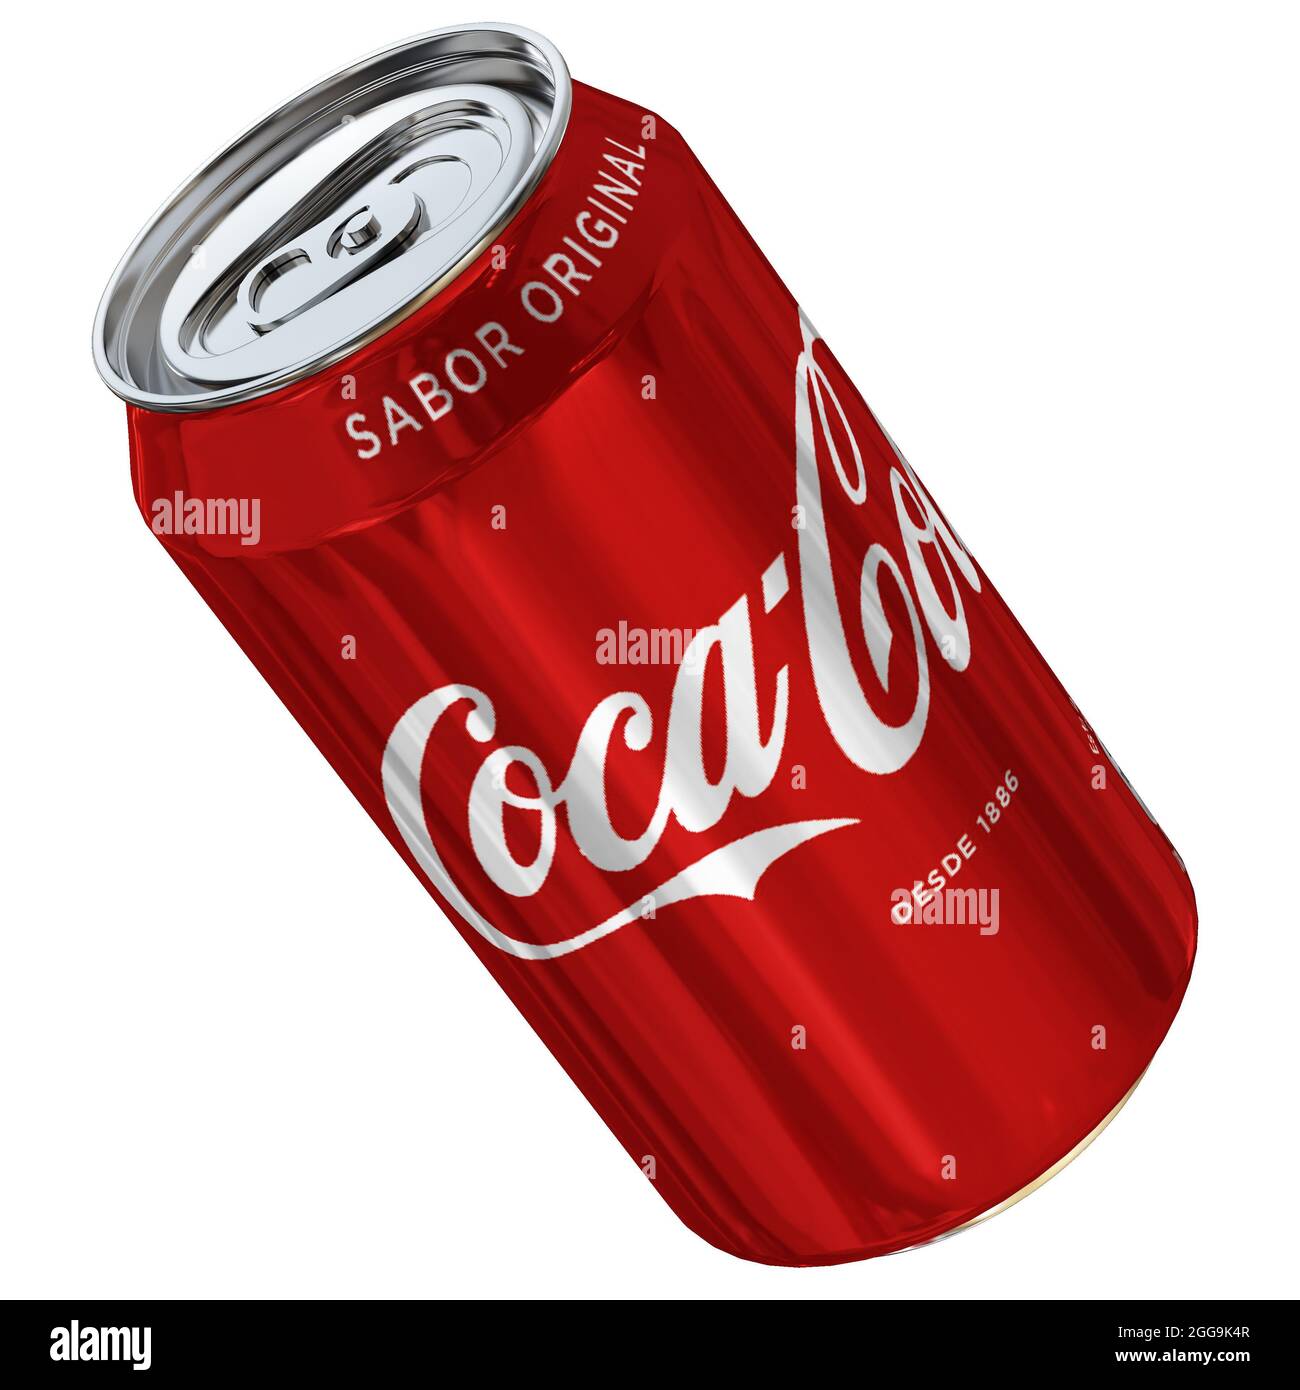 Coca-Cola Lata 12 FL Modelo 3D - Descargar Alimentos on